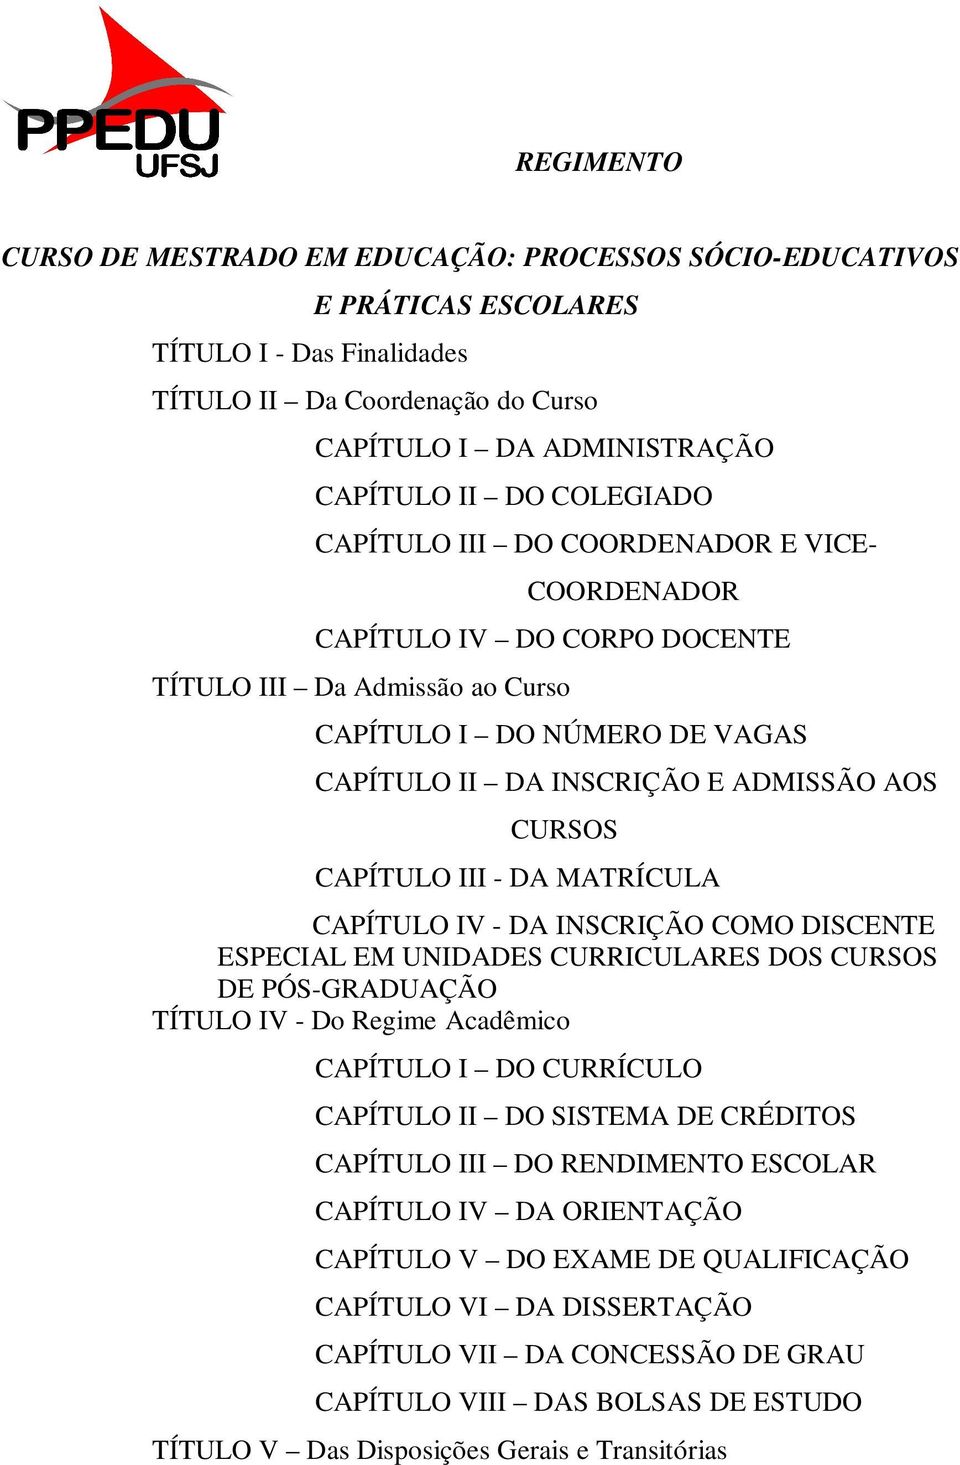 CAPÍTULO III - DA MATRÍCULA CAPÍTULO IV - DA INSCRIÇÃO COMO DISCENTE ESPECIAL EM UNIDADES CURRICULARES DOS CURSOS DE PÓS-GRADUAÇÃO TÍTULO IV - Do Regime Acadêmico CAPÍTULO I DO CURRÍCULO CAPÍTULO II